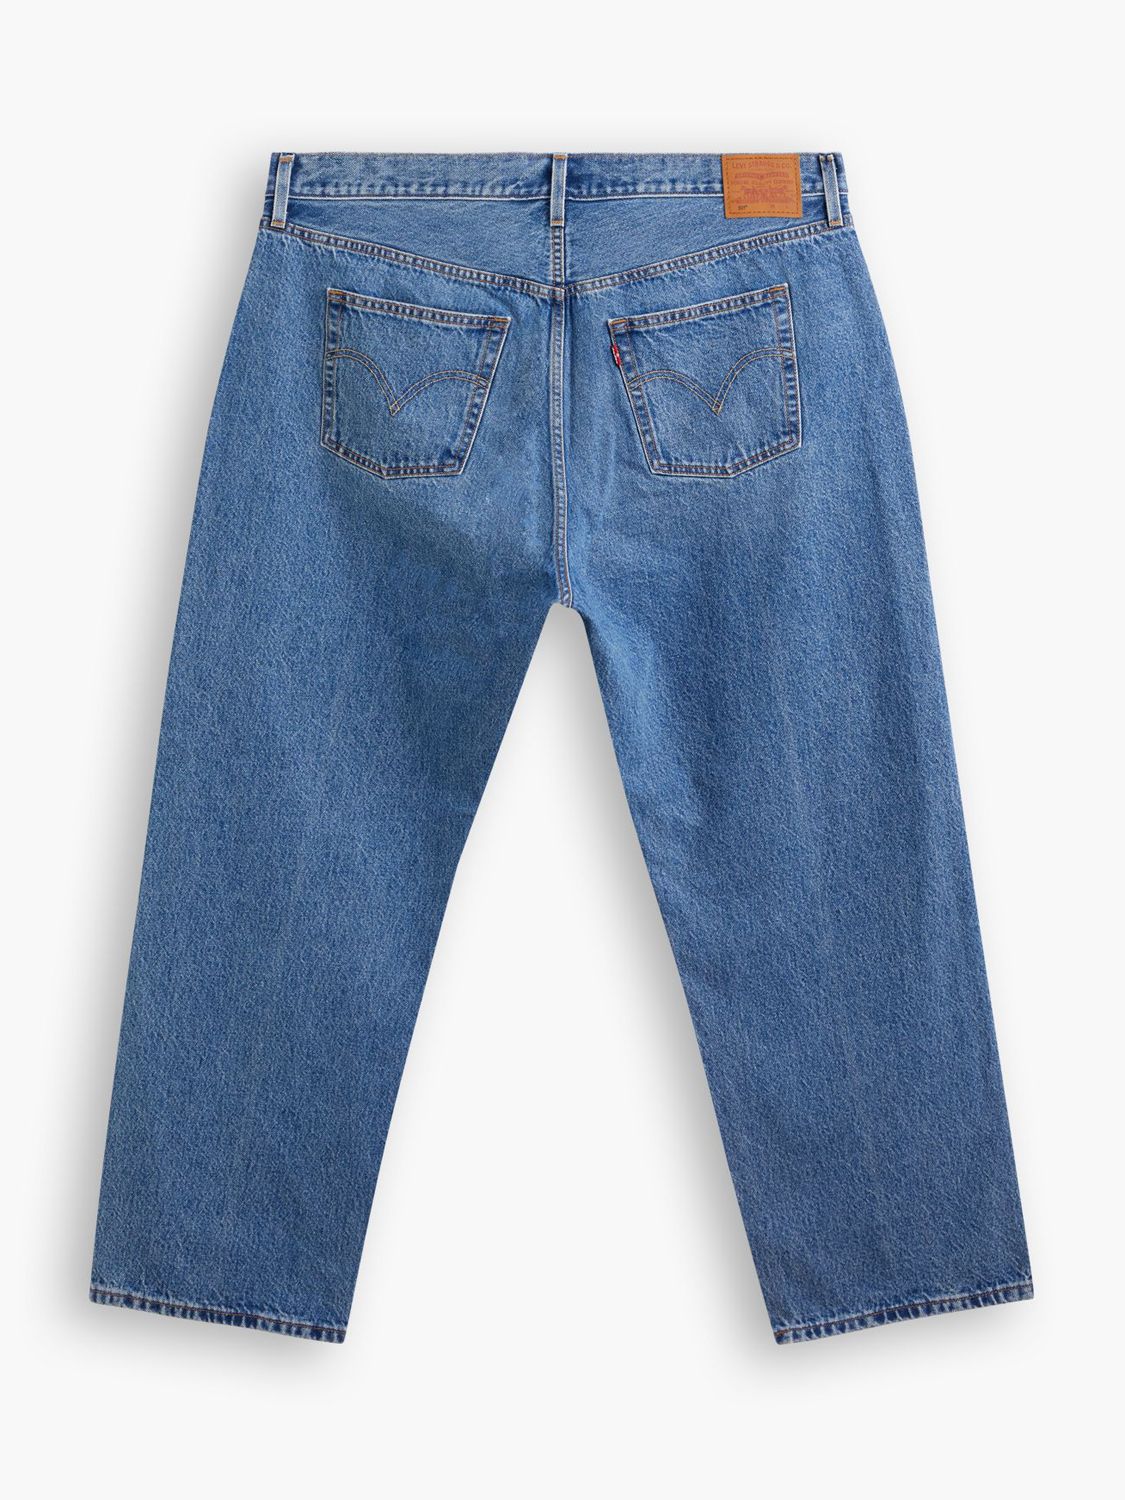 Levi's Plus 90's 501 Jeans, Drew Me In